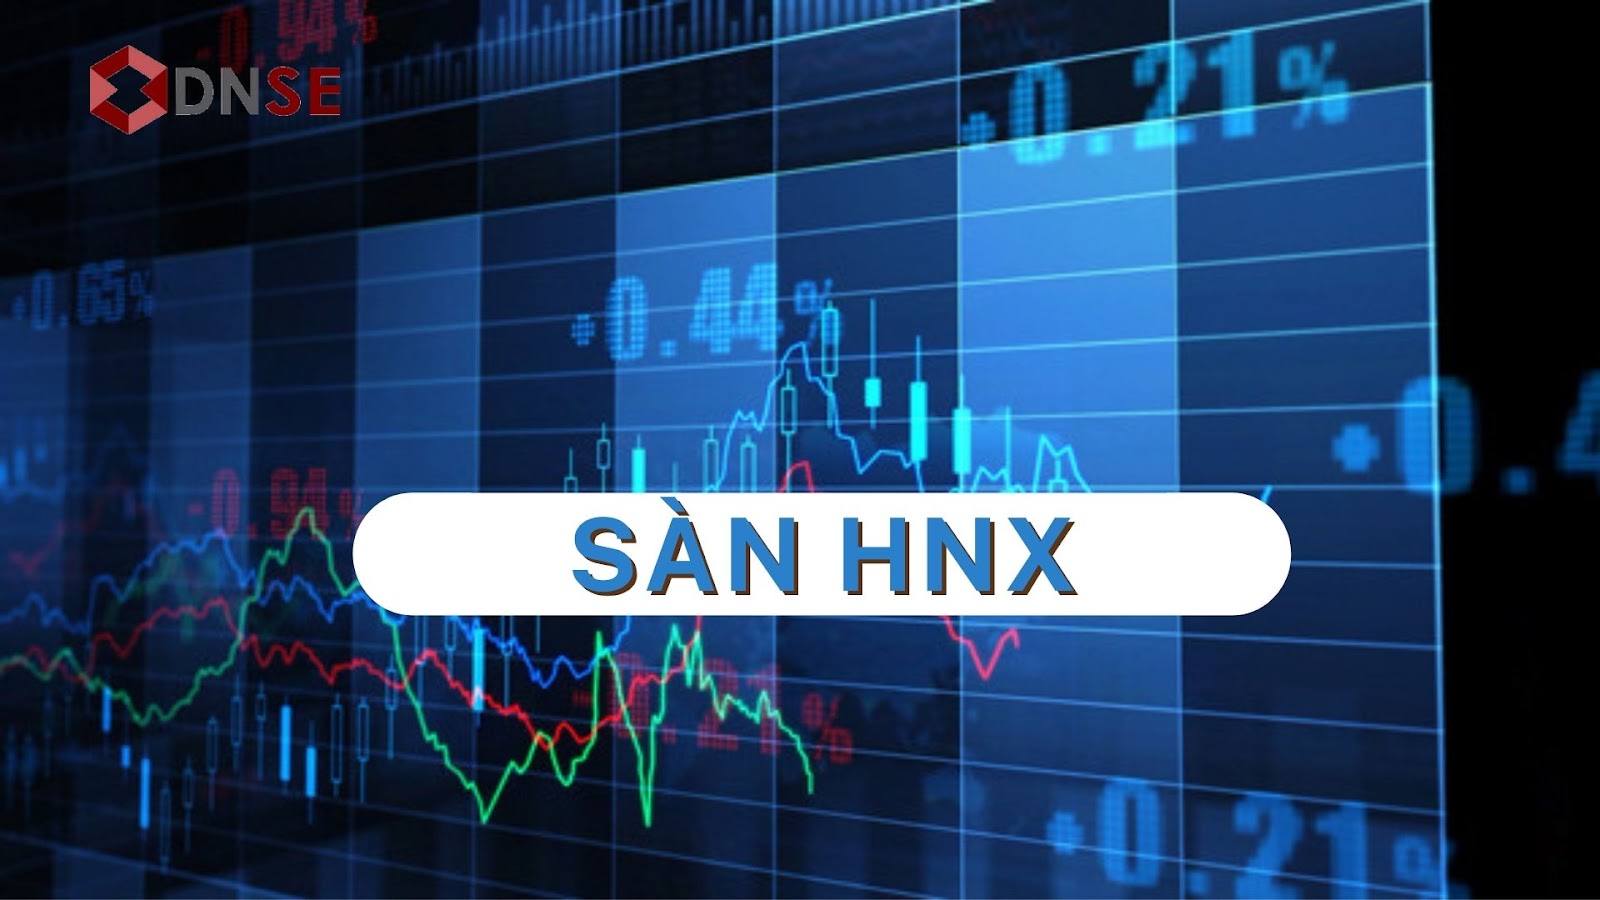 Sàn HNX - Sở giao dịch chứng khoán Hà Nội